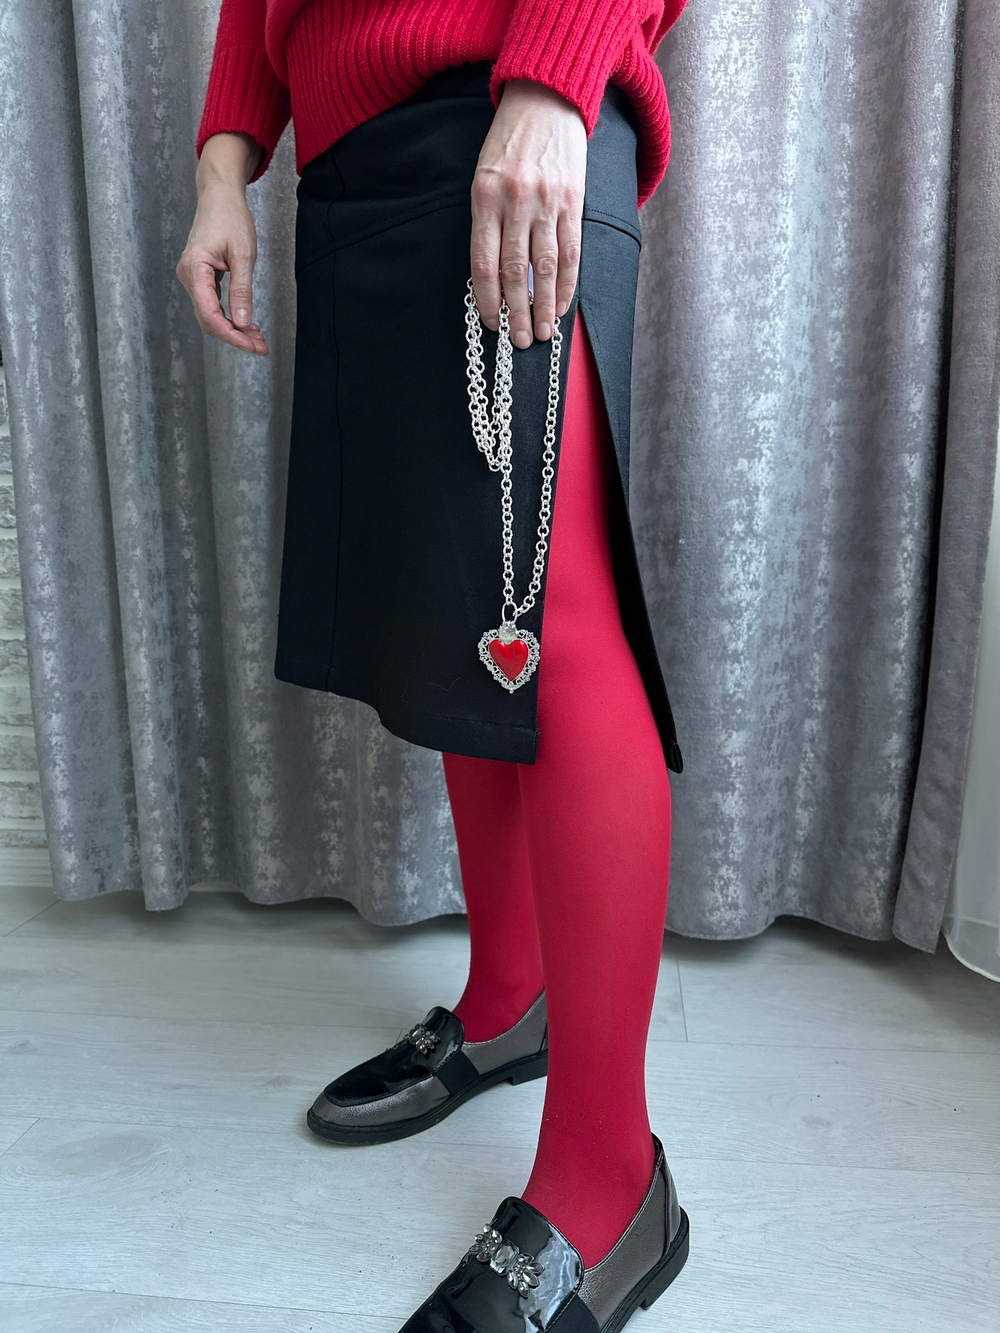 Кулон сердце ажурное с красной эмалью на цепочке из круглых звеньев с насечками, цвет серебр, Италия